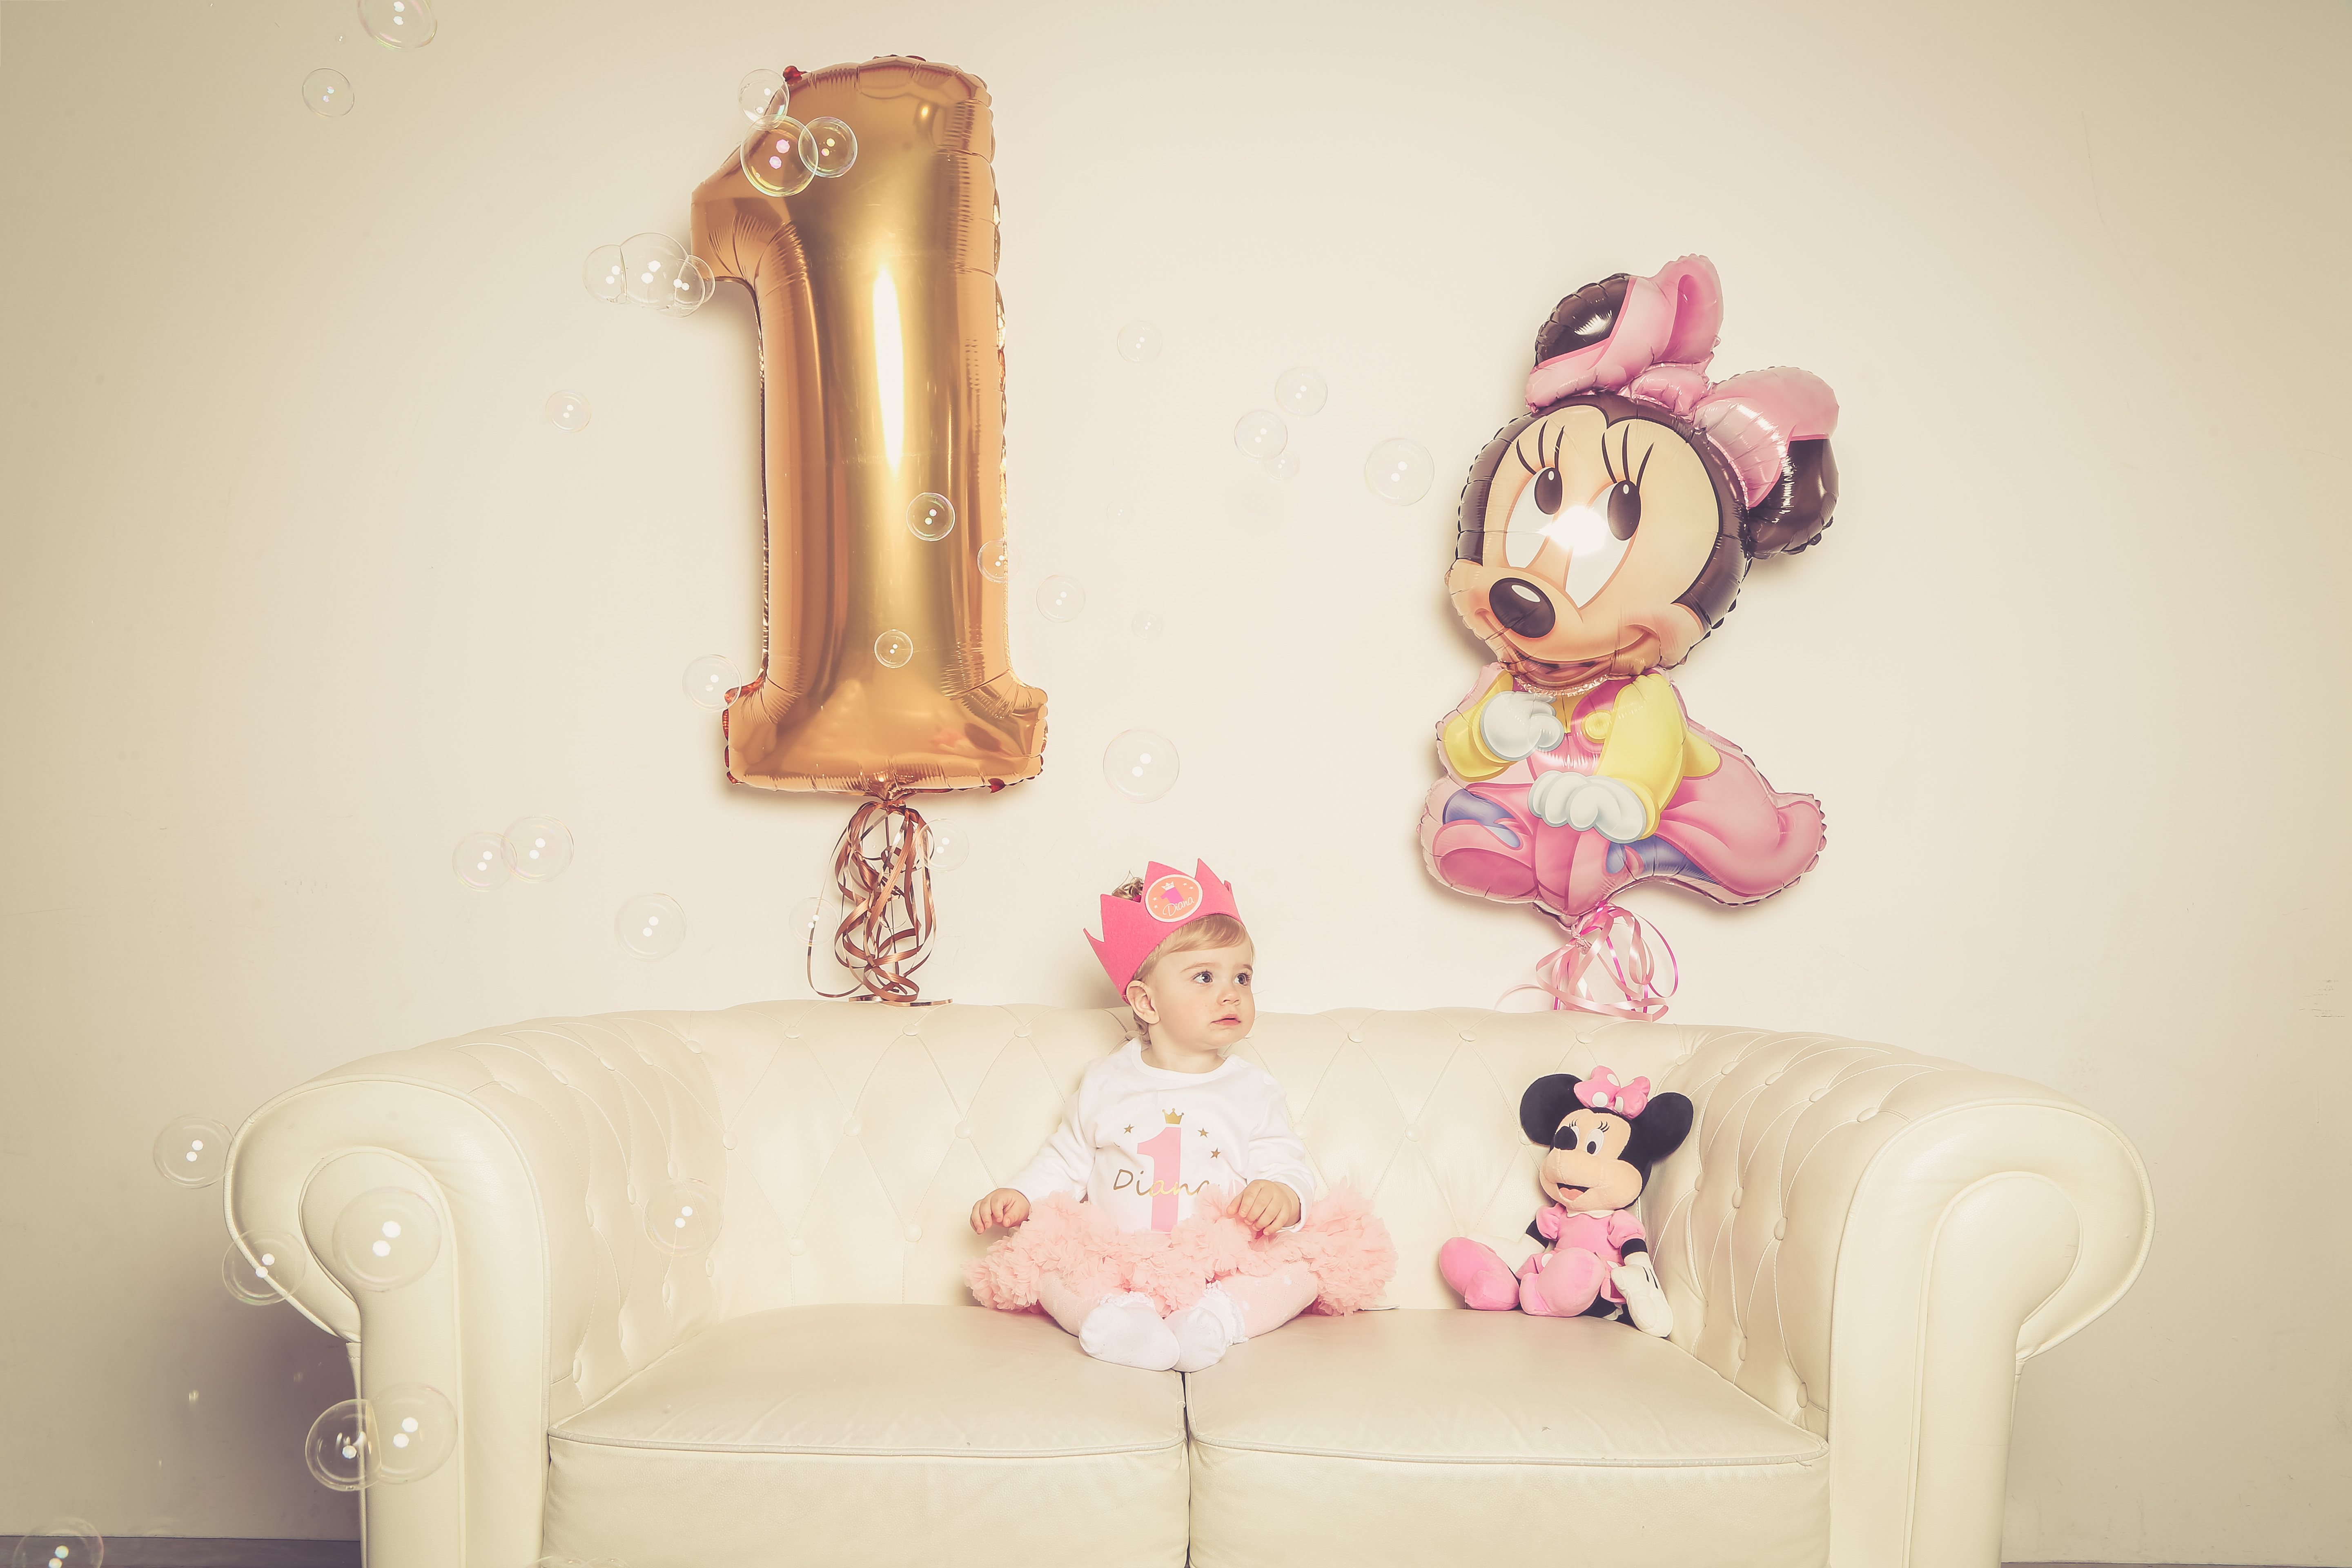 „Happy Birthday Prinzessin“ - Dein erster Geburtstag wird gefeiert